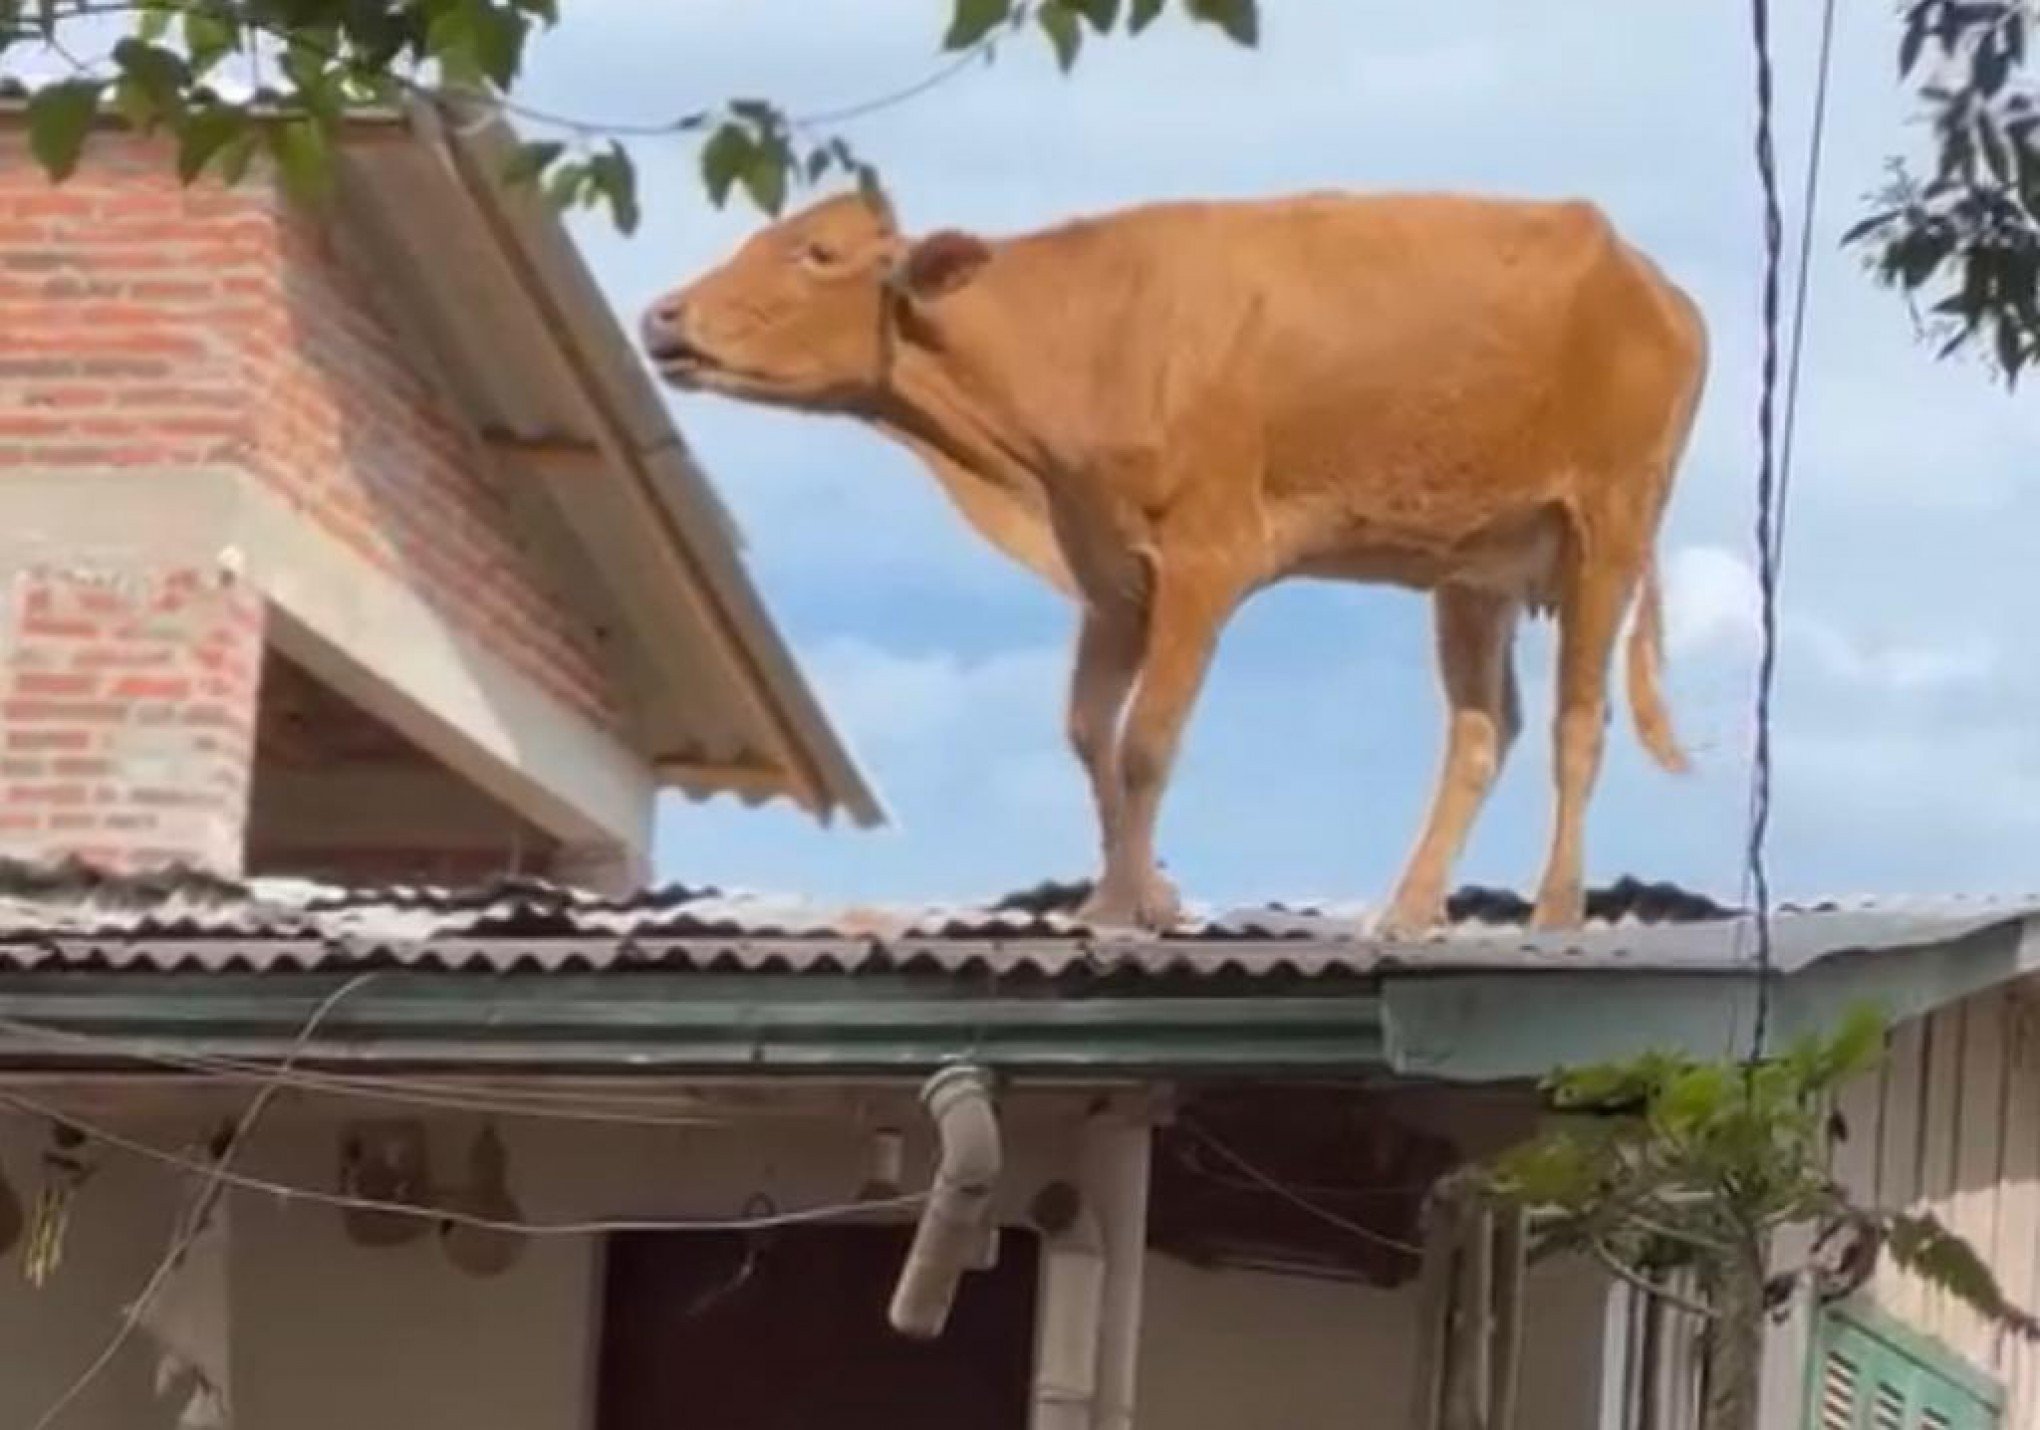 CATÁSTROFE NO RS: Vaca vai parar em cima do telhado de uma casa no Vale do Taquari; saiba como ela foi retirada de lá